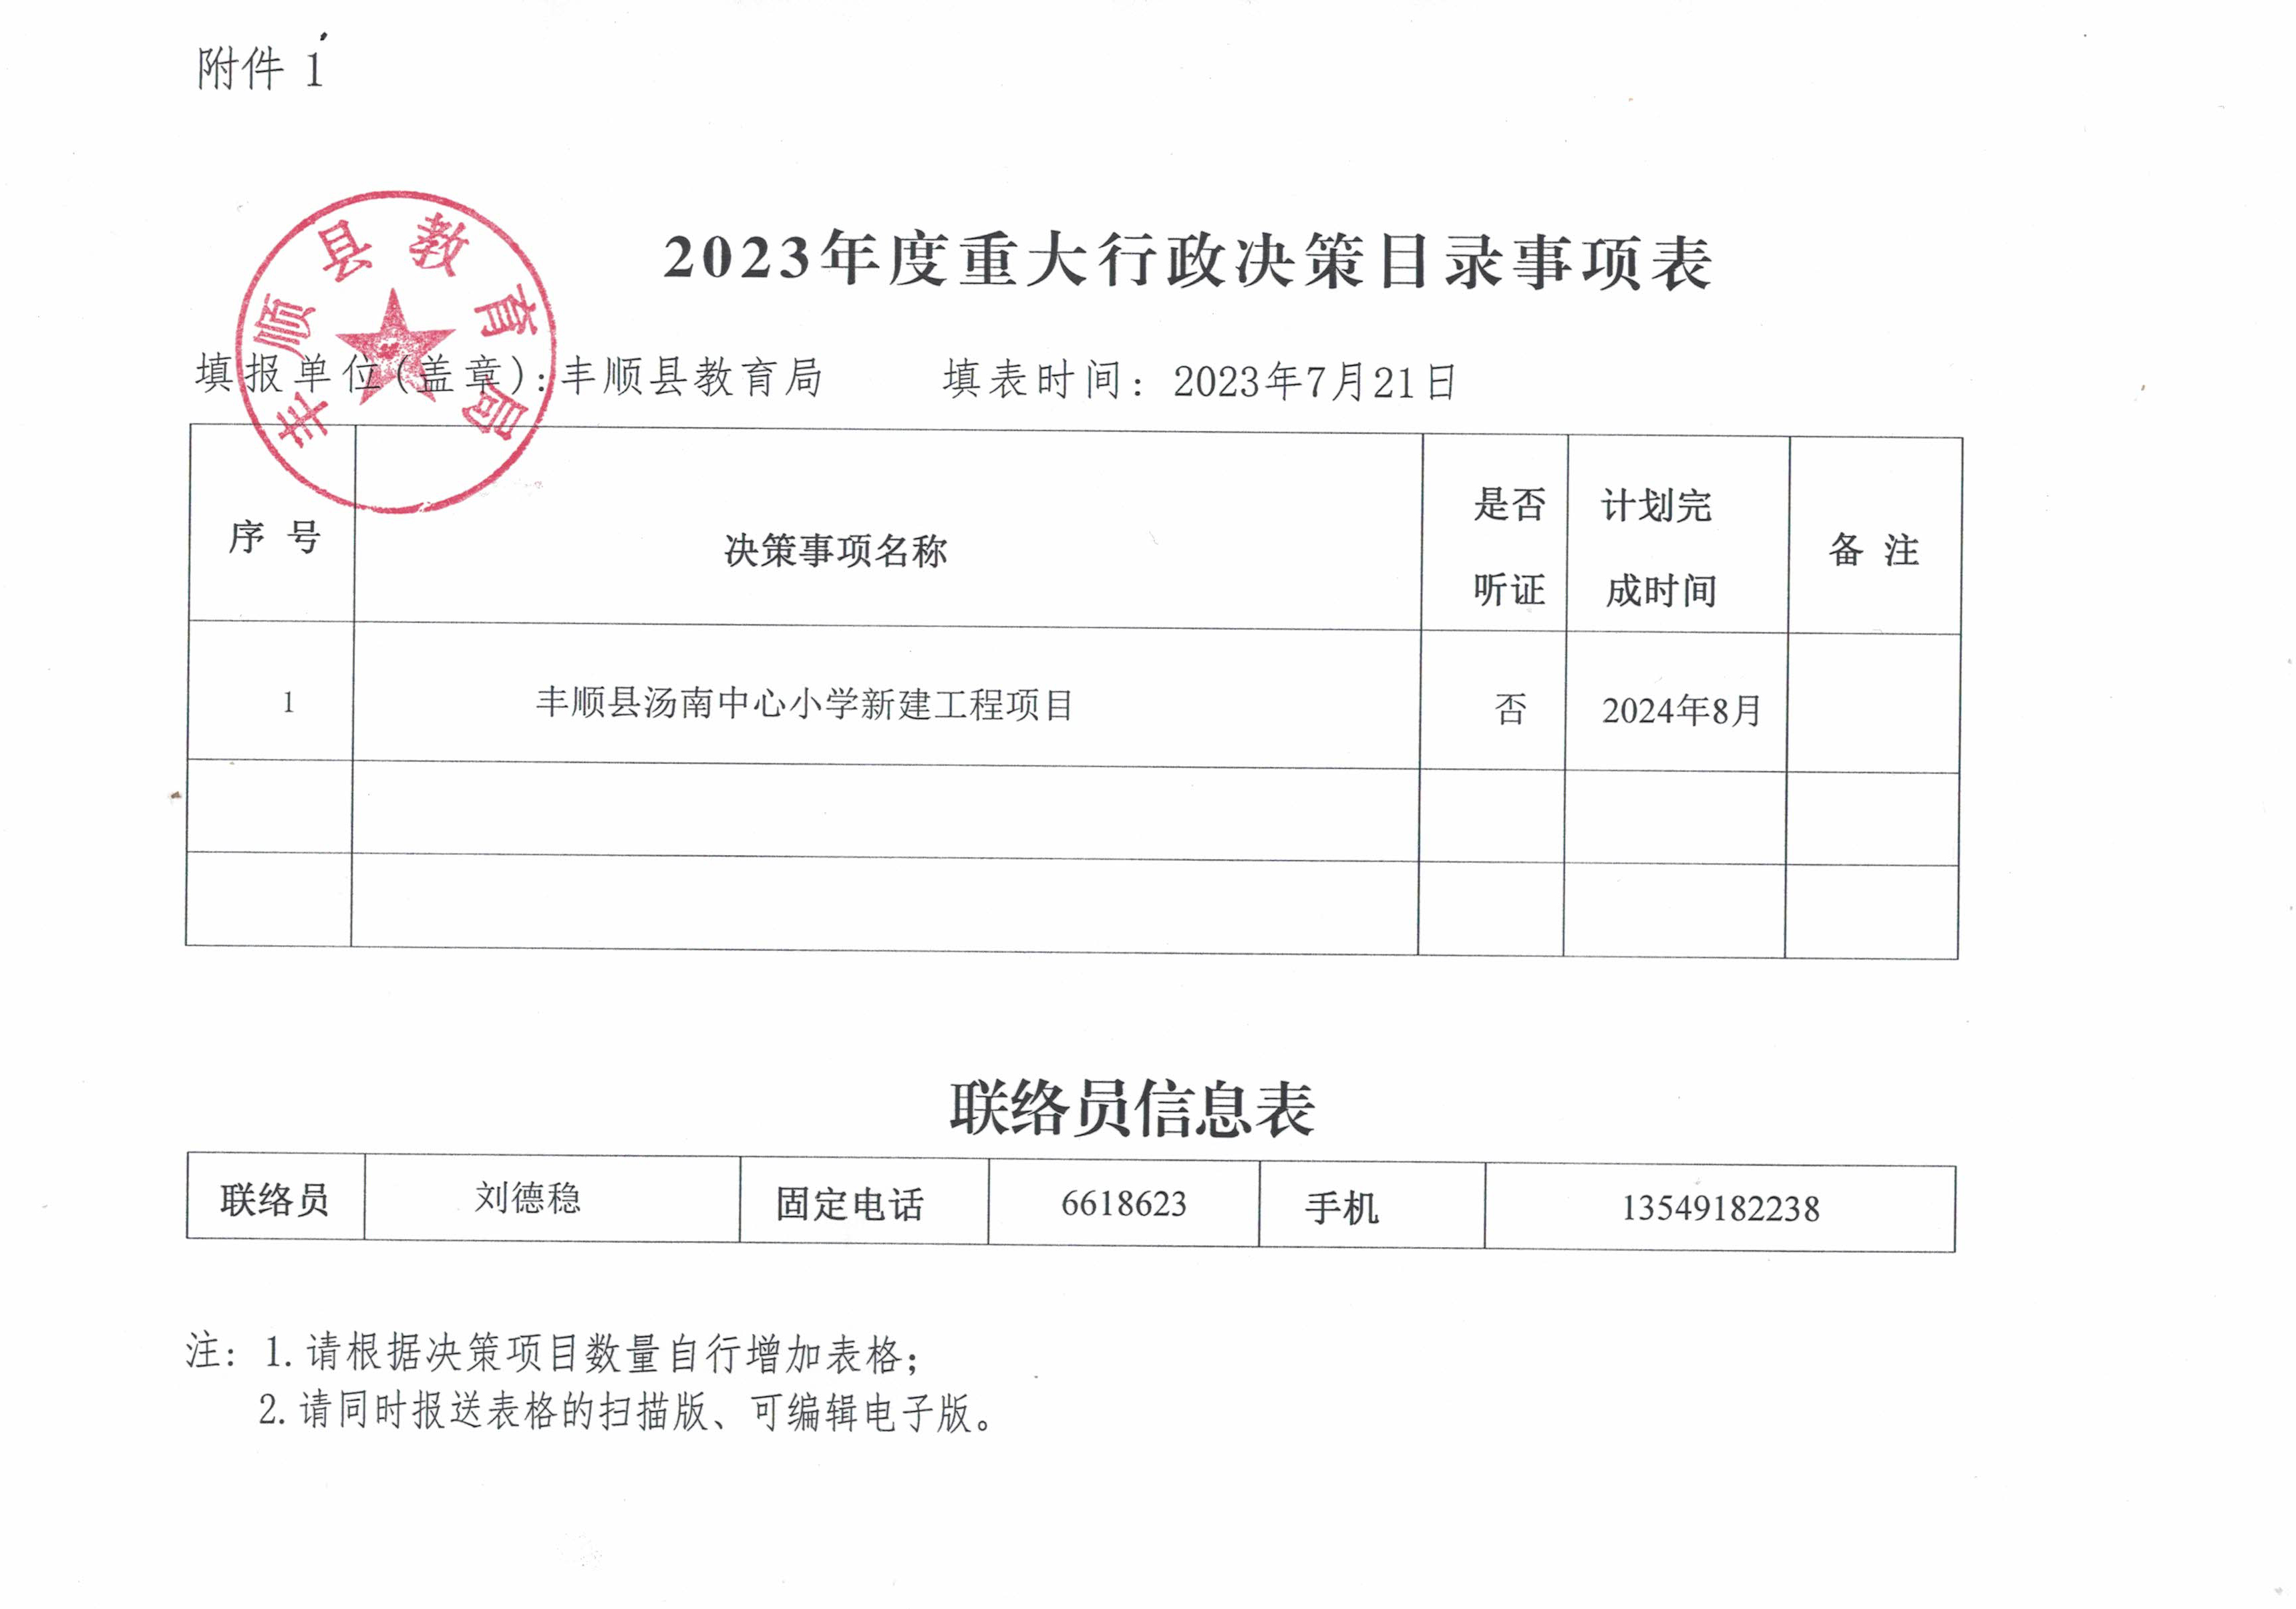 丰顺县教育局2023年度重大行政决策目录事项表.jpg